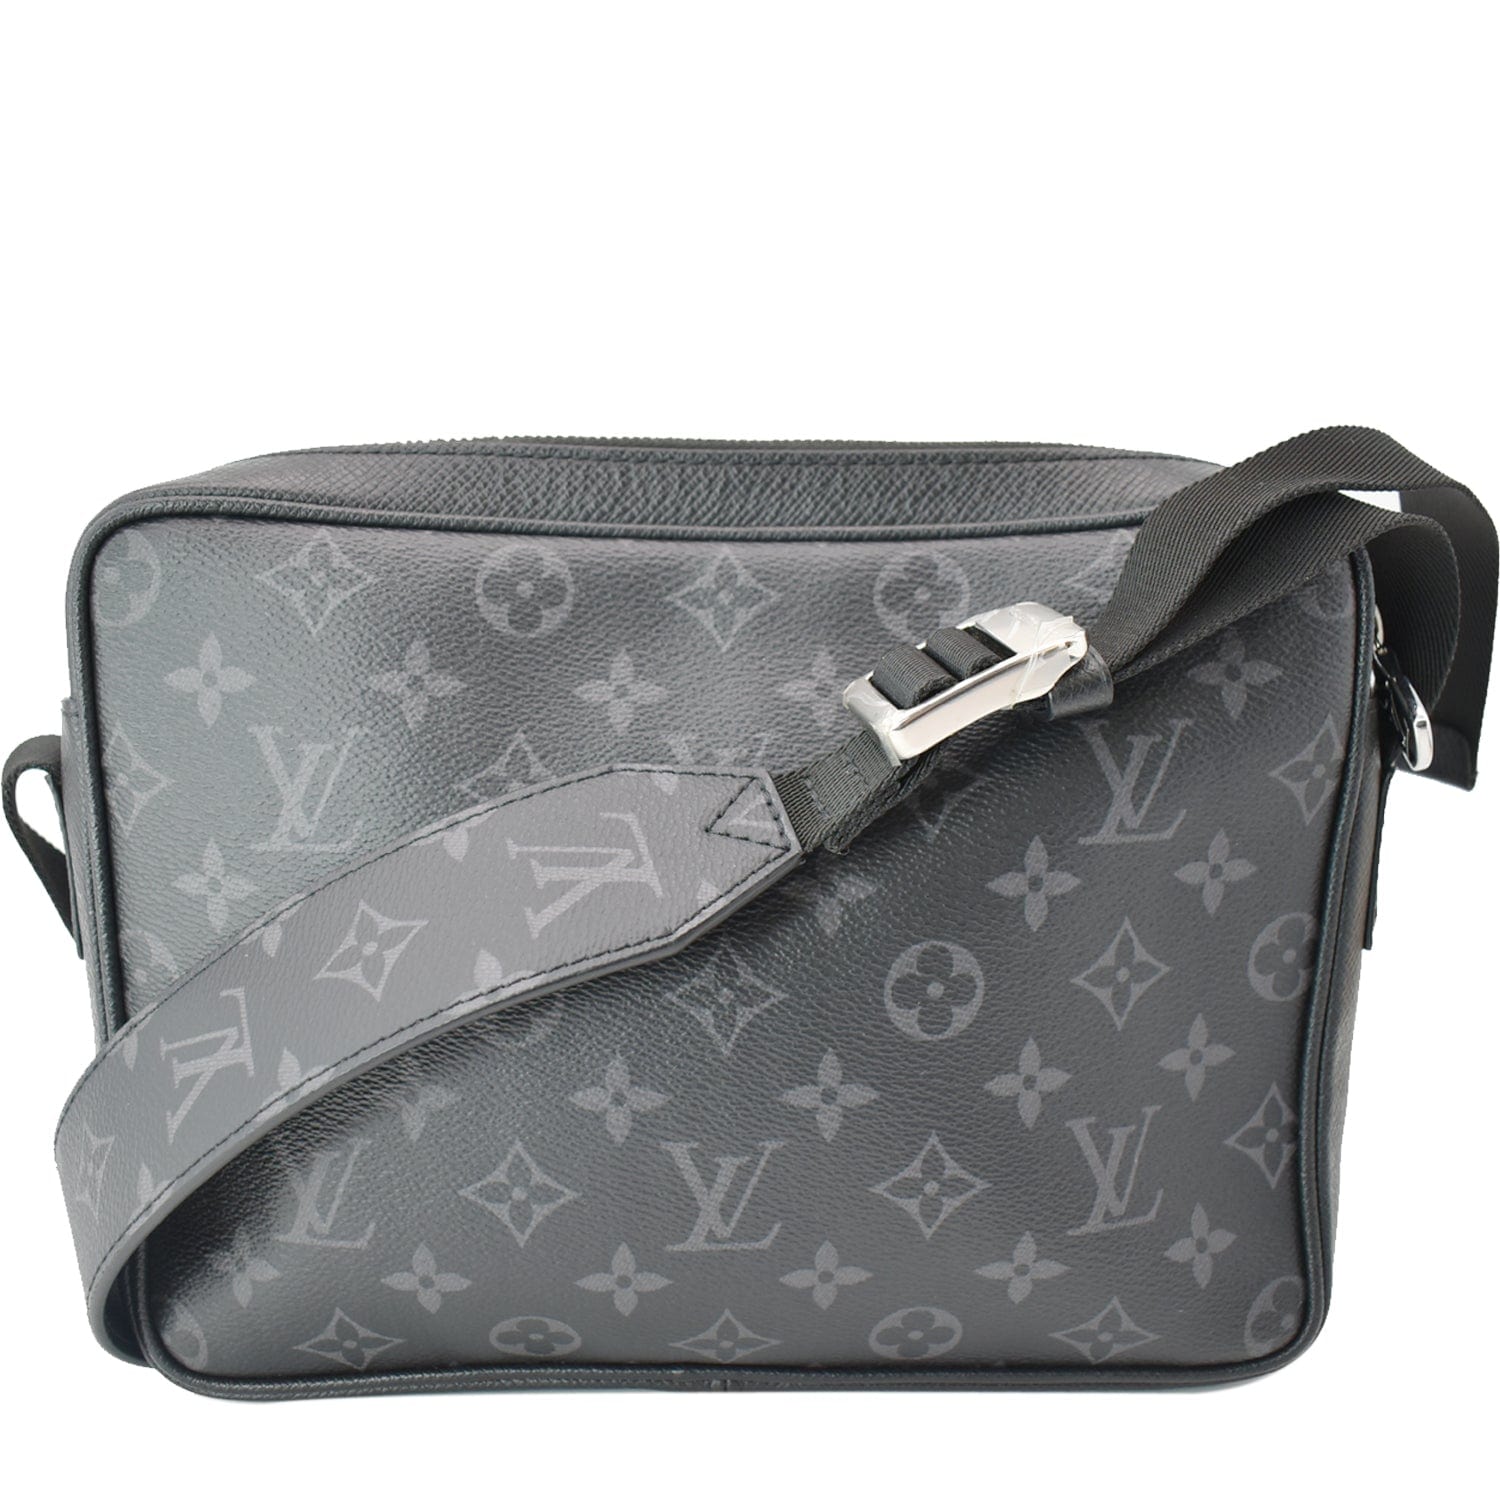 Louis Vuitton Outdoor Messenger Bag - Couture USA